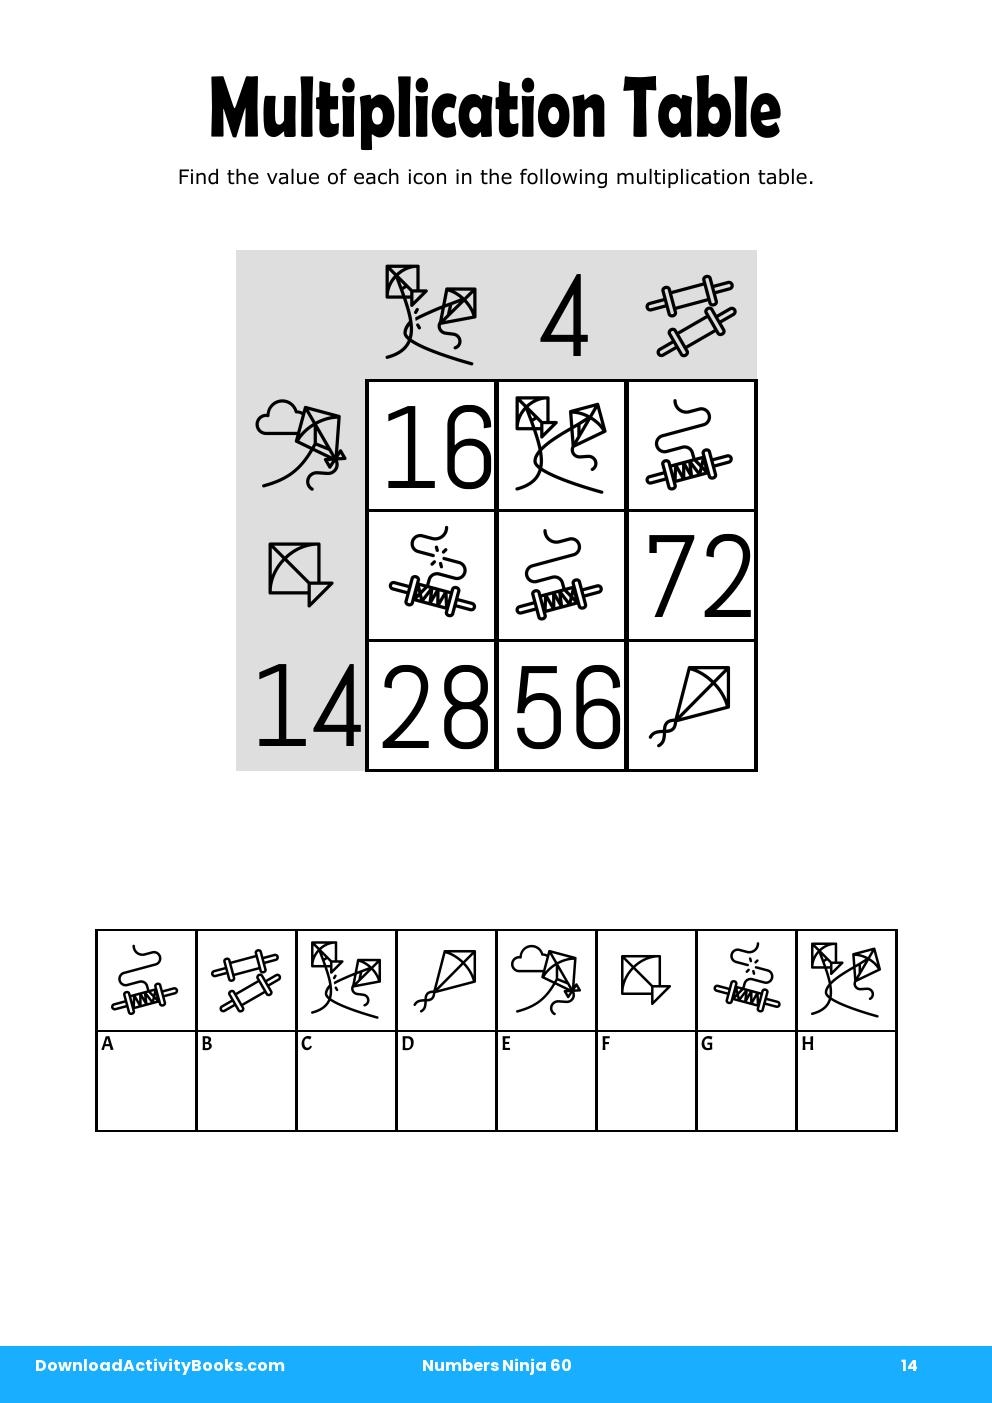 Multiplication Table in Numbers Ninja 60